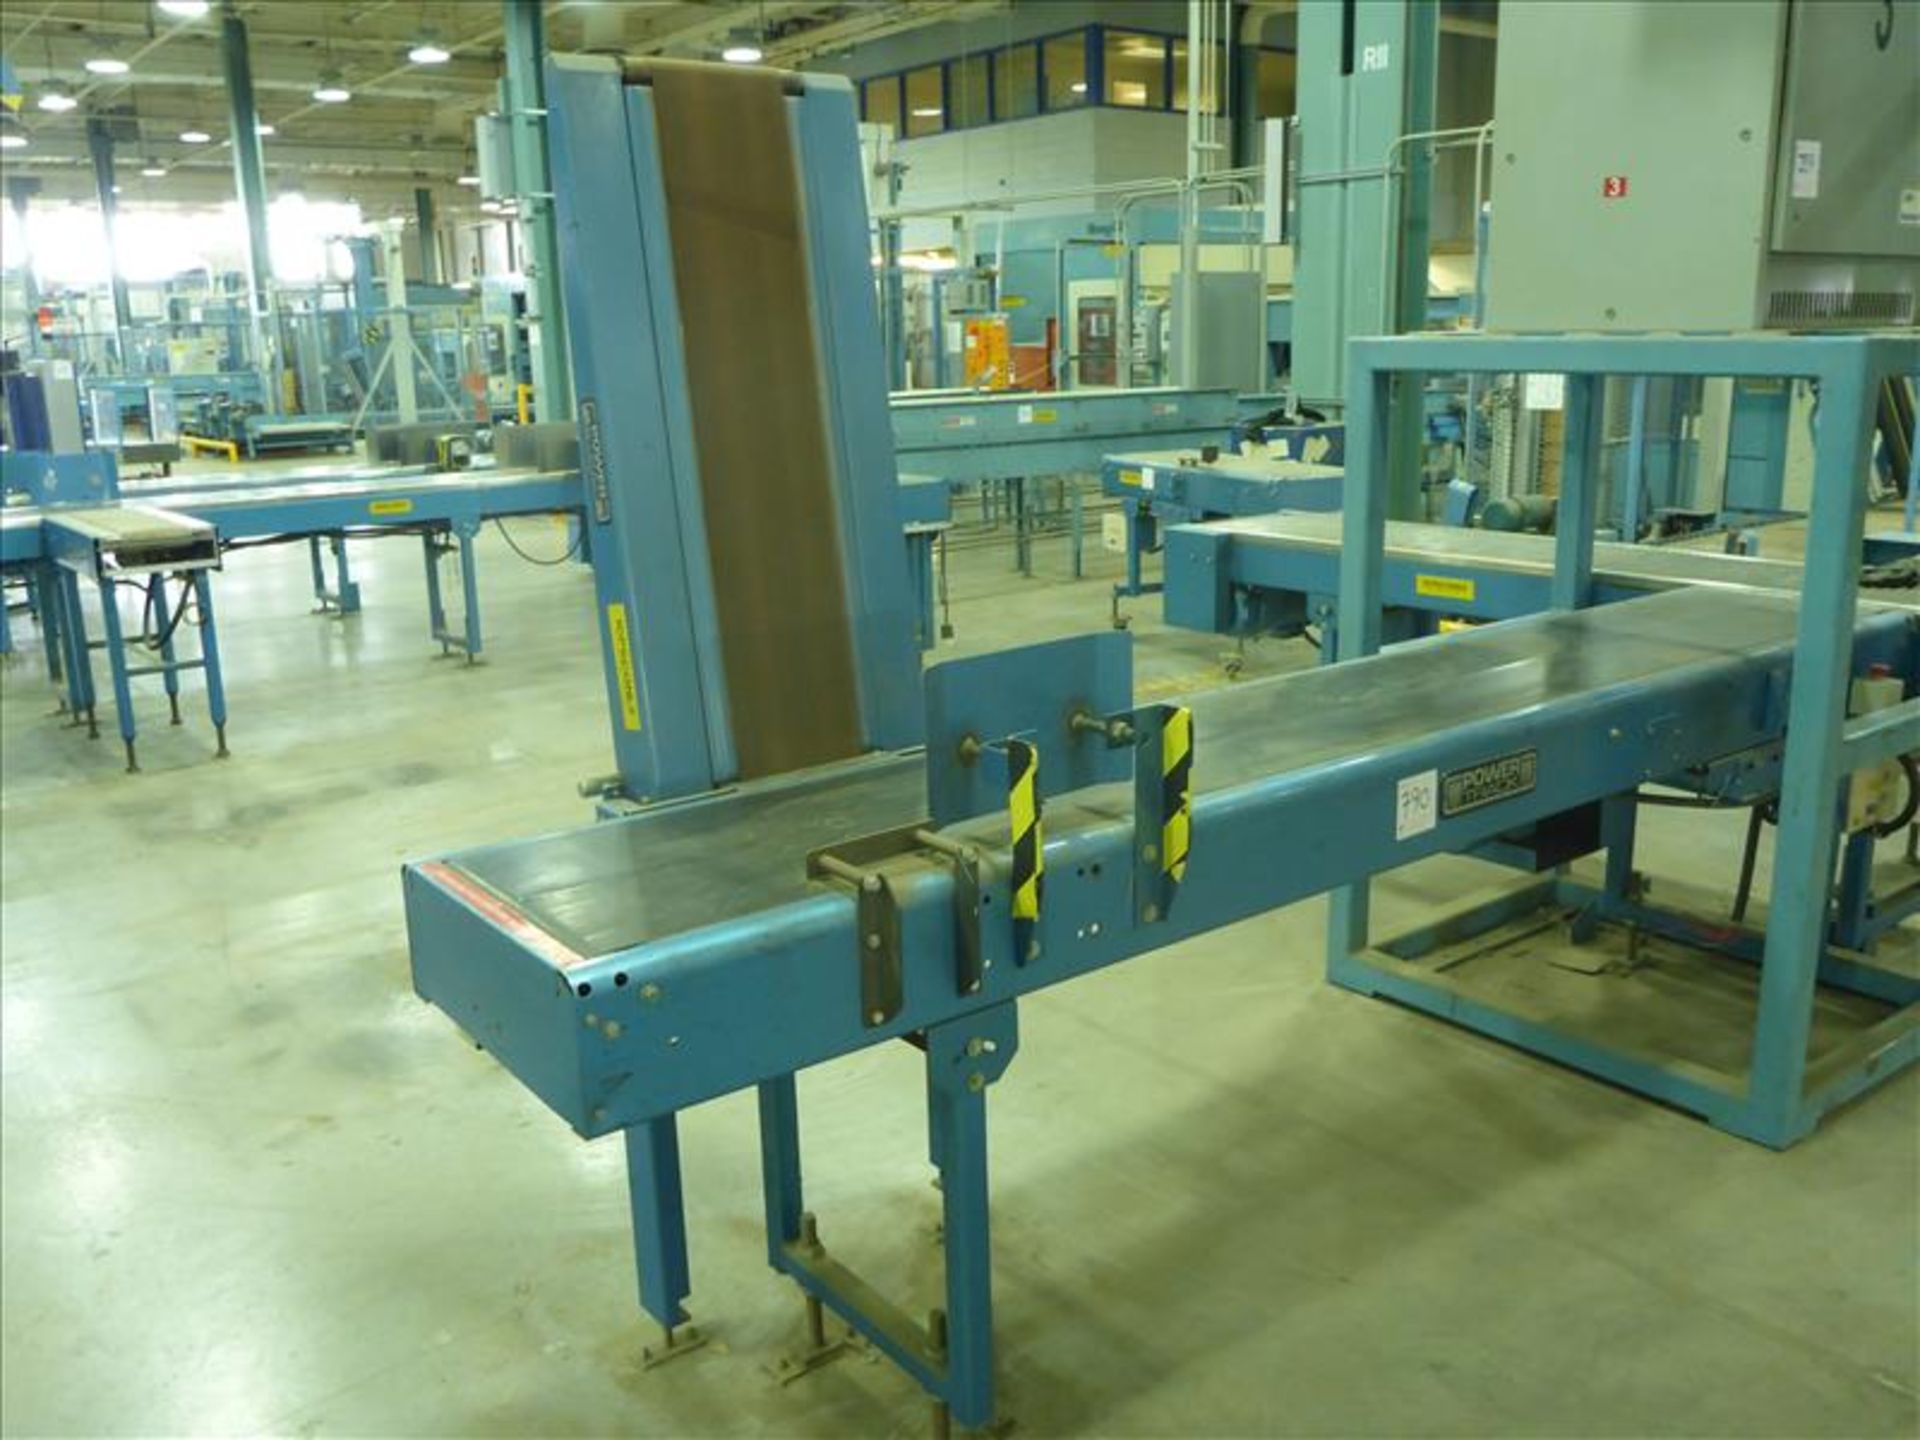 PowerStrap power belt conveyor, approx. 18 in. x 139 in. c/w lift infeed conveyor, approx. 12 in.